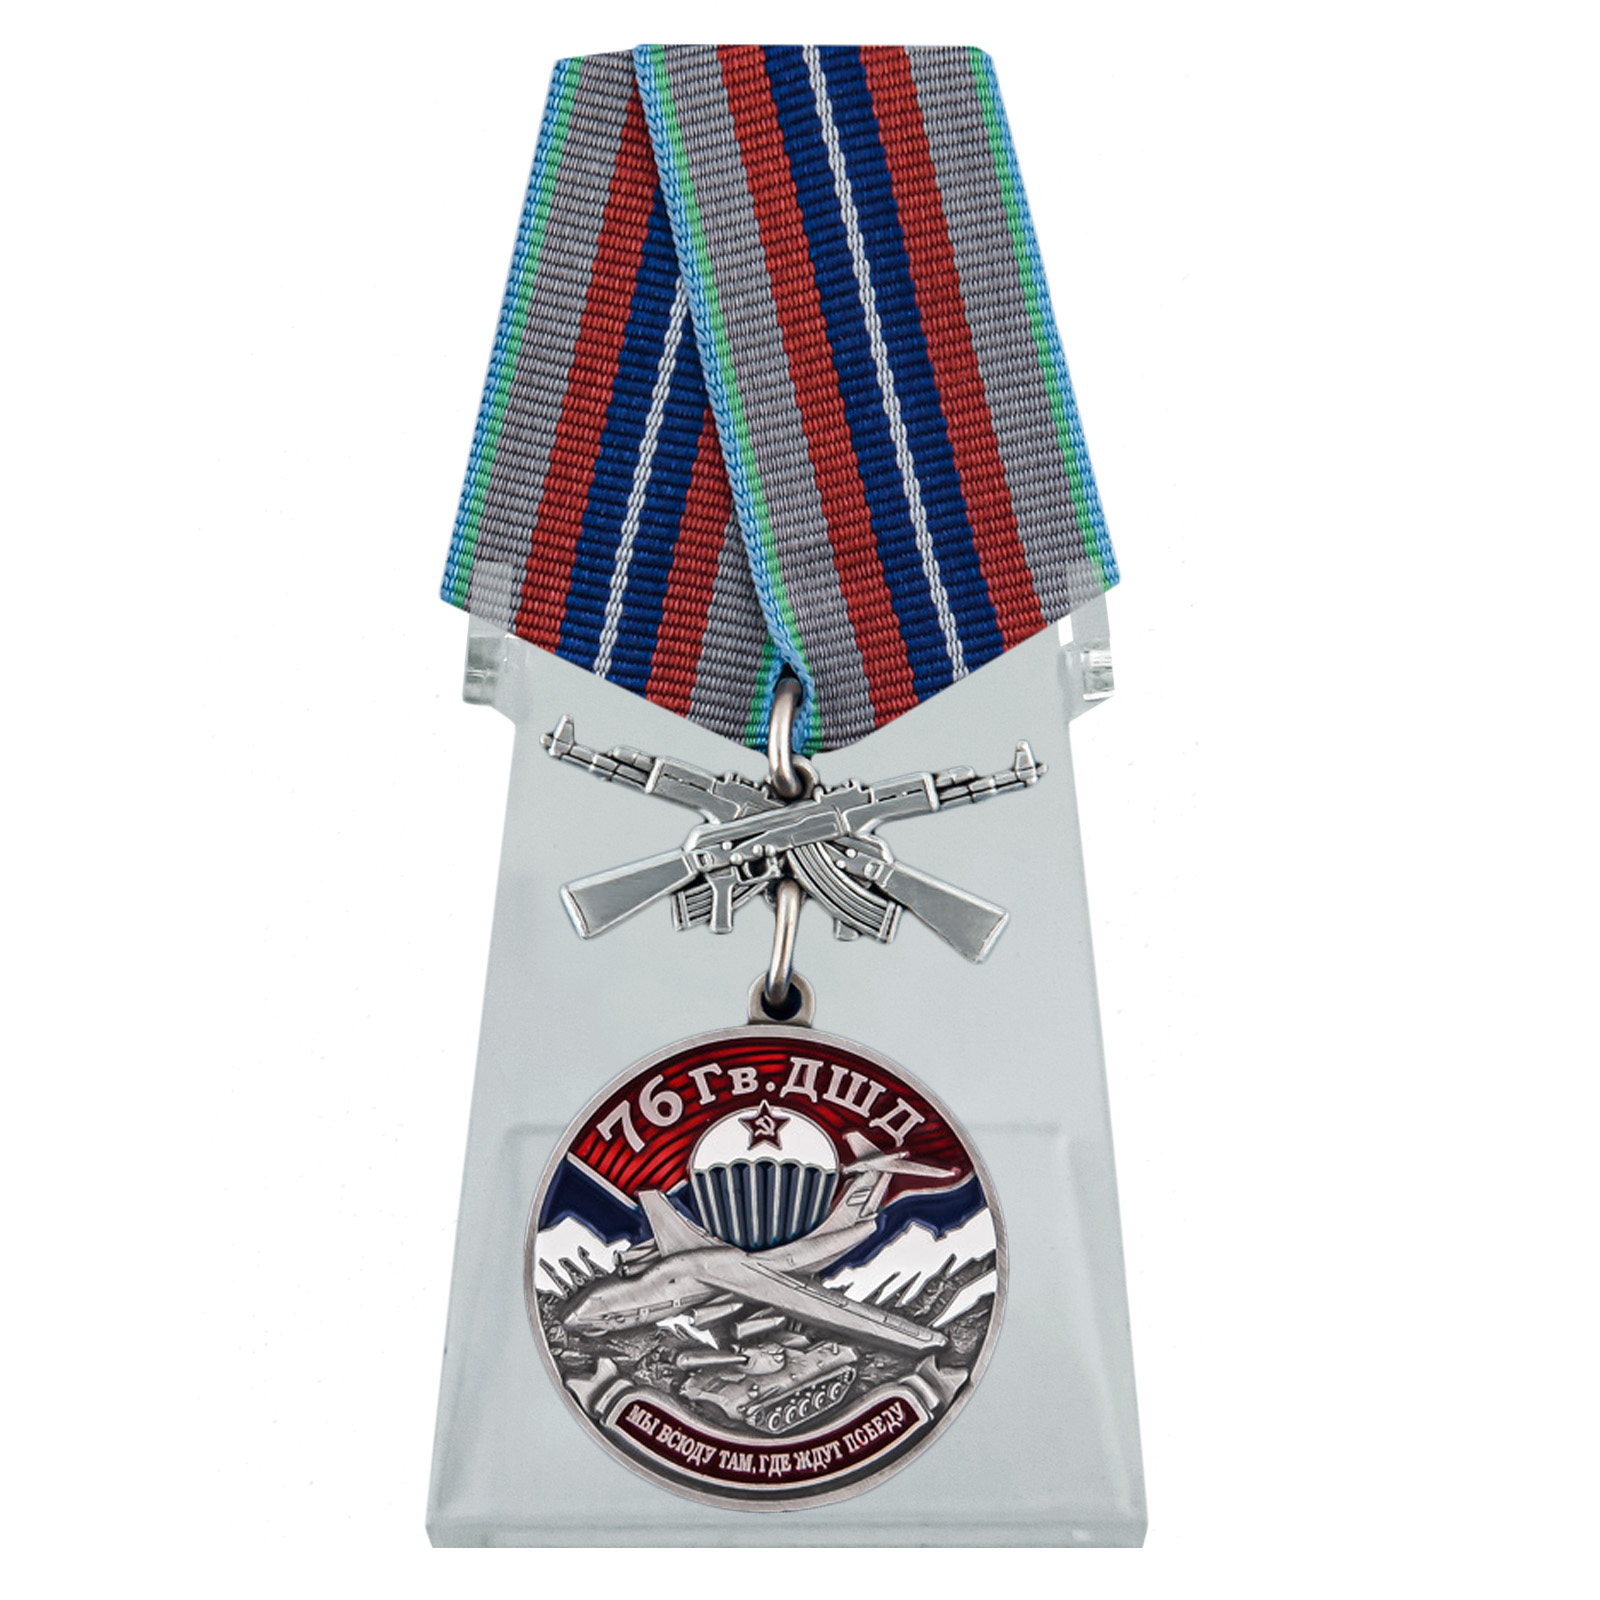 Медаль "76 Гв. ДШД" на подставке